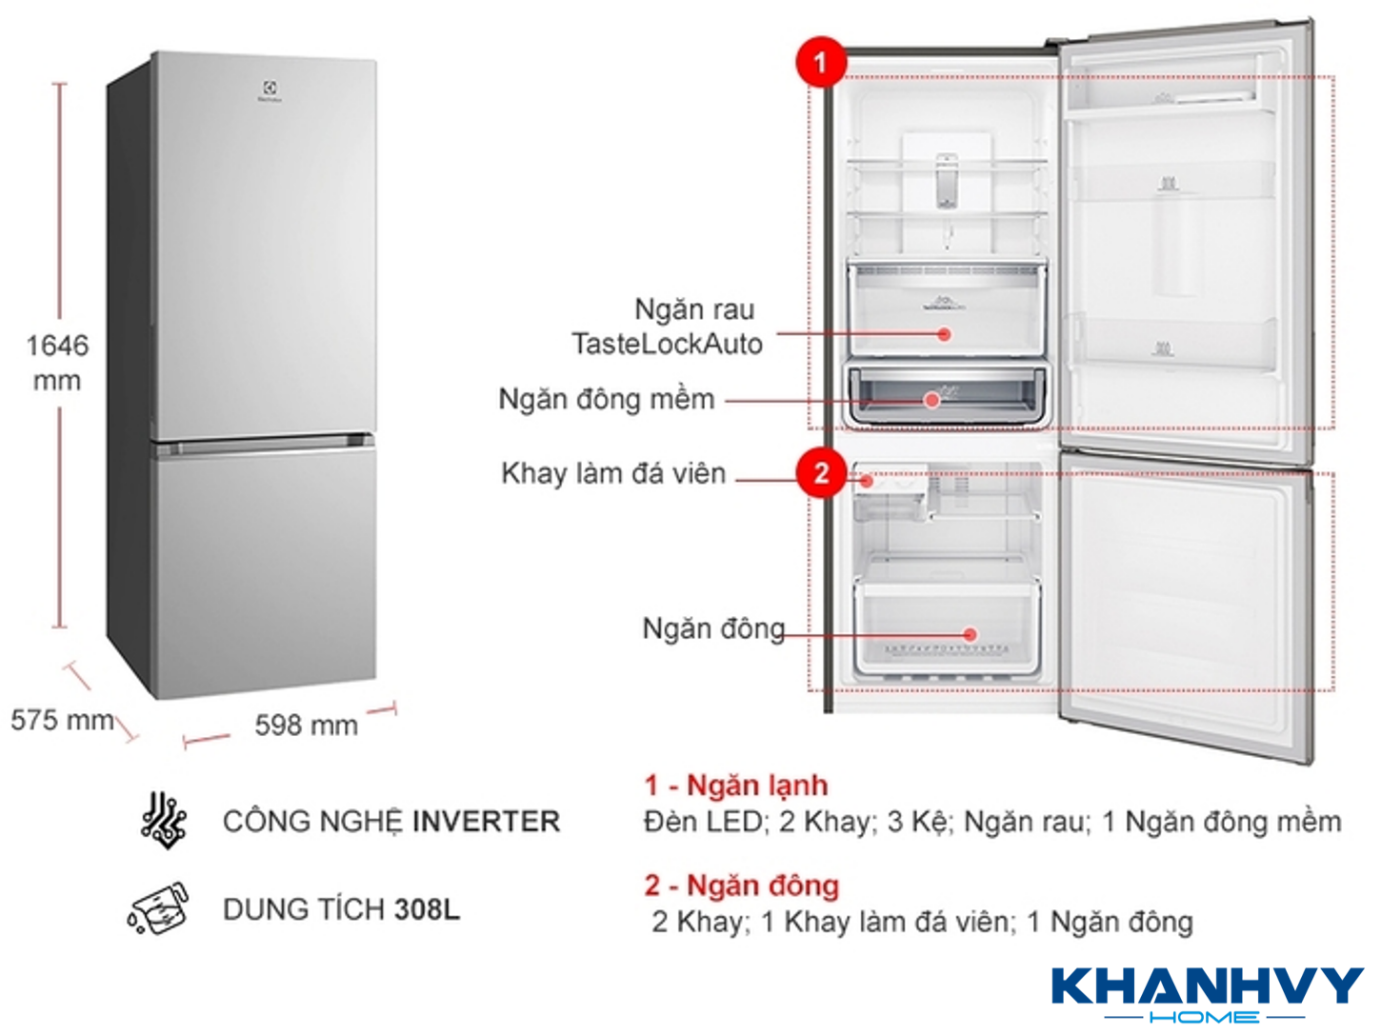 Tủ lạnh Electrolux EBB3402K-A được thiết kế ngăn đông dưới hiện đại với nhiều công nghệ ưu việt